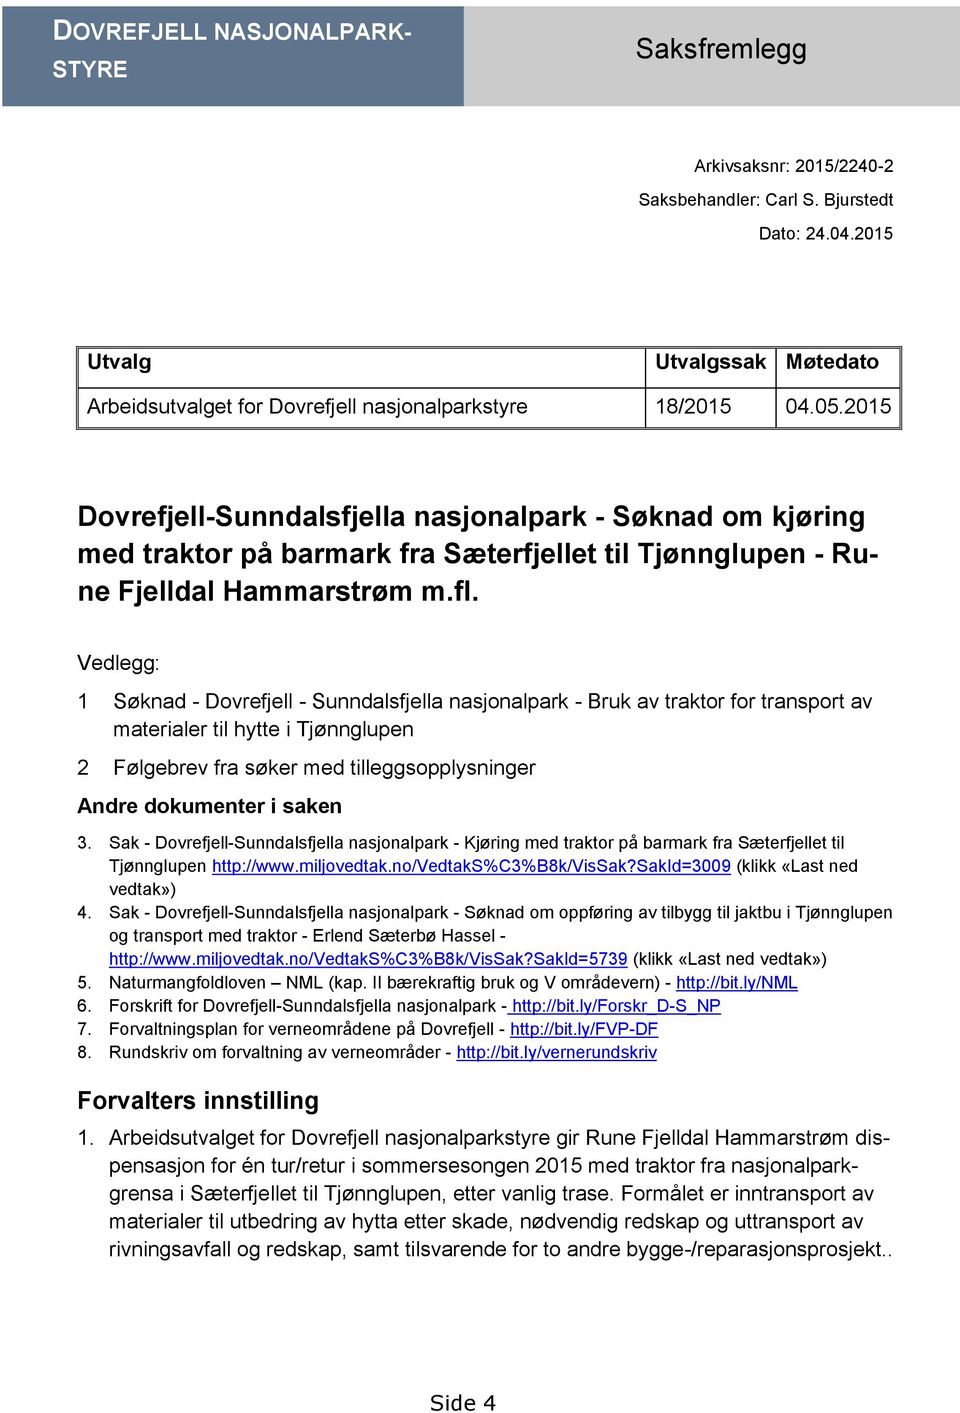 2015 Dovrefjell-Sunndalsfjella nasjonalpark - Søknad om kjøring med traktor på barmark fra Sæterfjellet til Tjønnglupen - Rune Fjelldal Hammarstrøm m.fl.